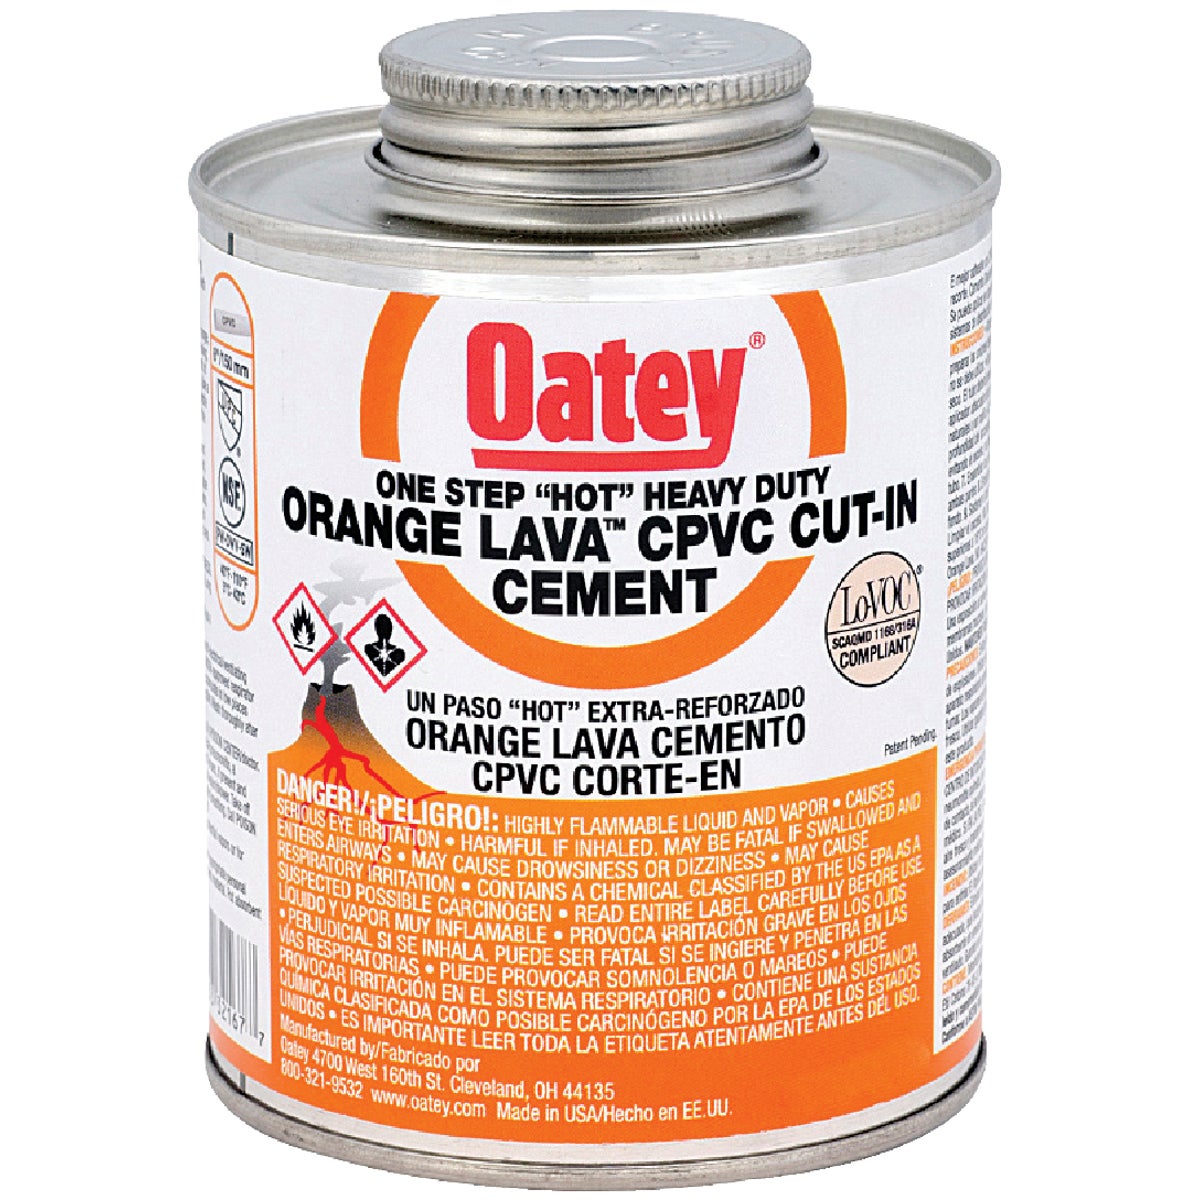 Oatey 8 Oz. Orange Lava One-Stop "Hot" Heavy-Duty CPVC Cement